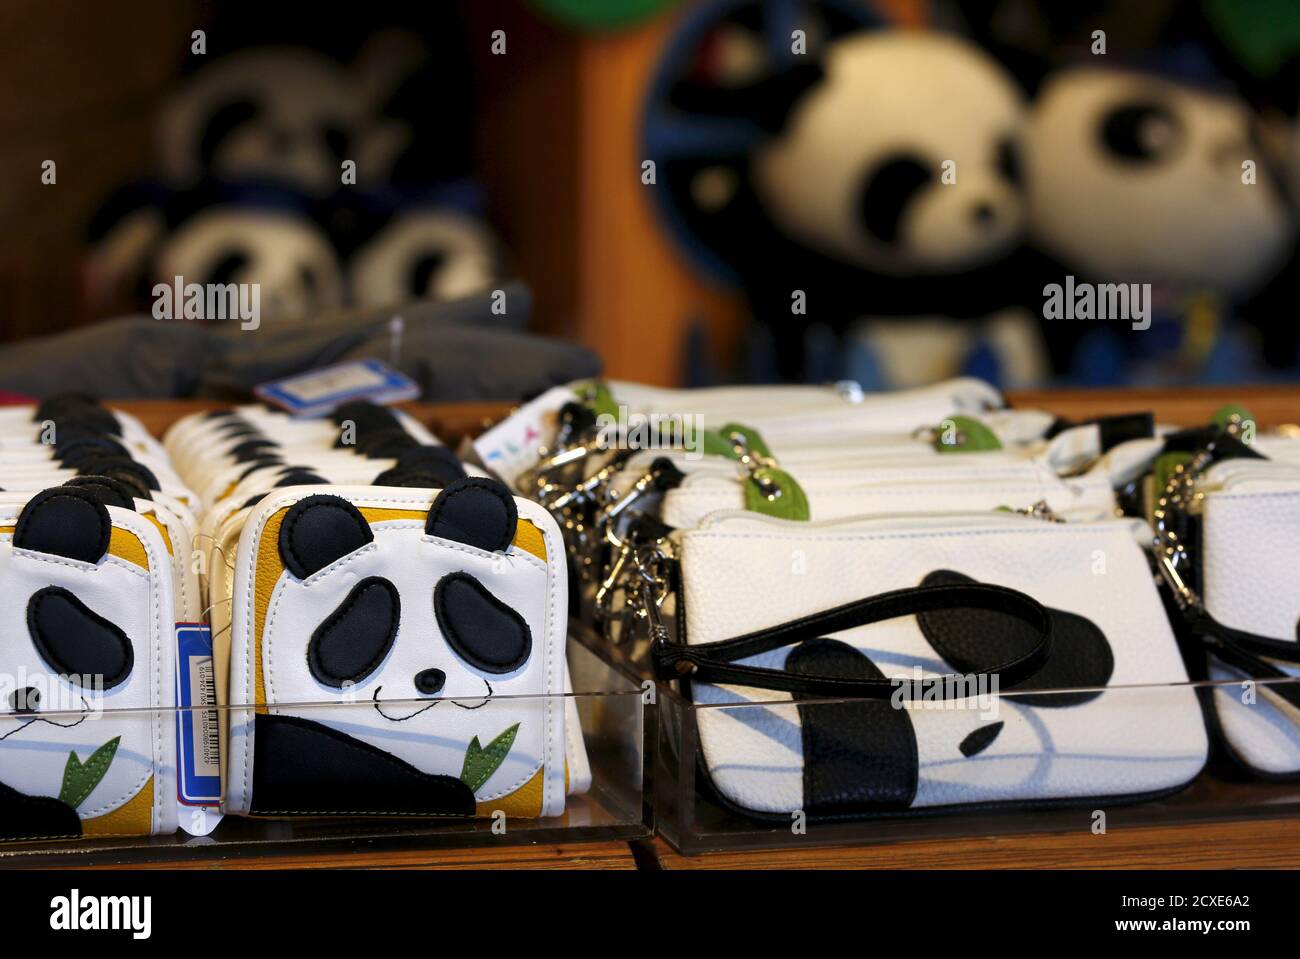 Las carteras en forma de panda se exhiben dentro de una tienda de souvenirs  en el Hong Kong Ocean Park, China, 28 de julio de 2015. La gigantesca panda  Jia Jia en